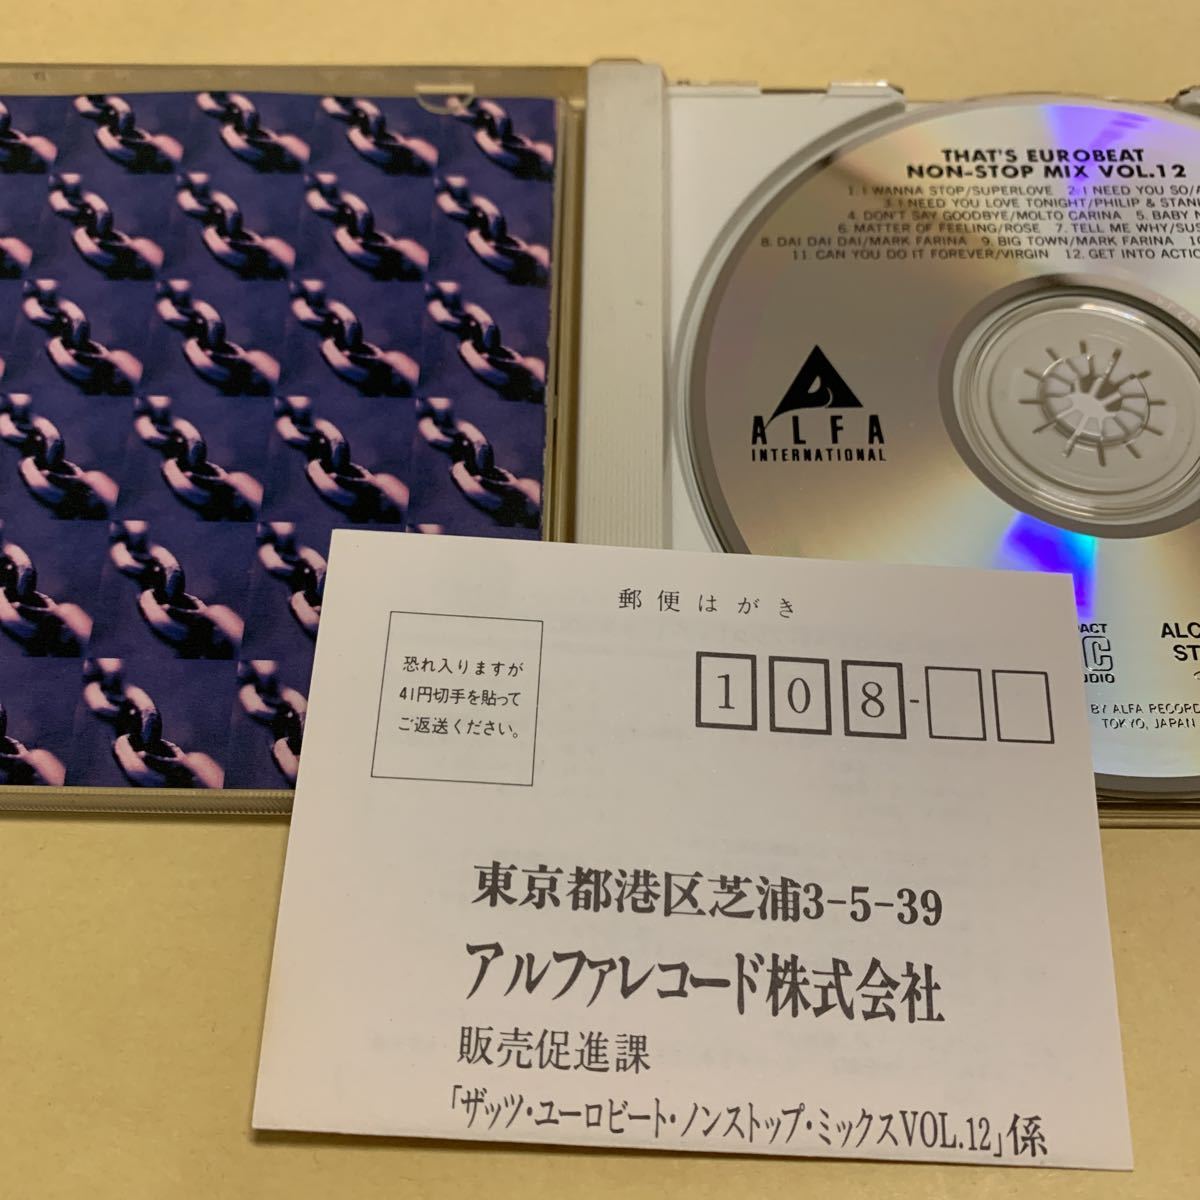 ザッツ・ユーロビート THAT’s EUROBEAT NON STOP MIX vol.12 CD